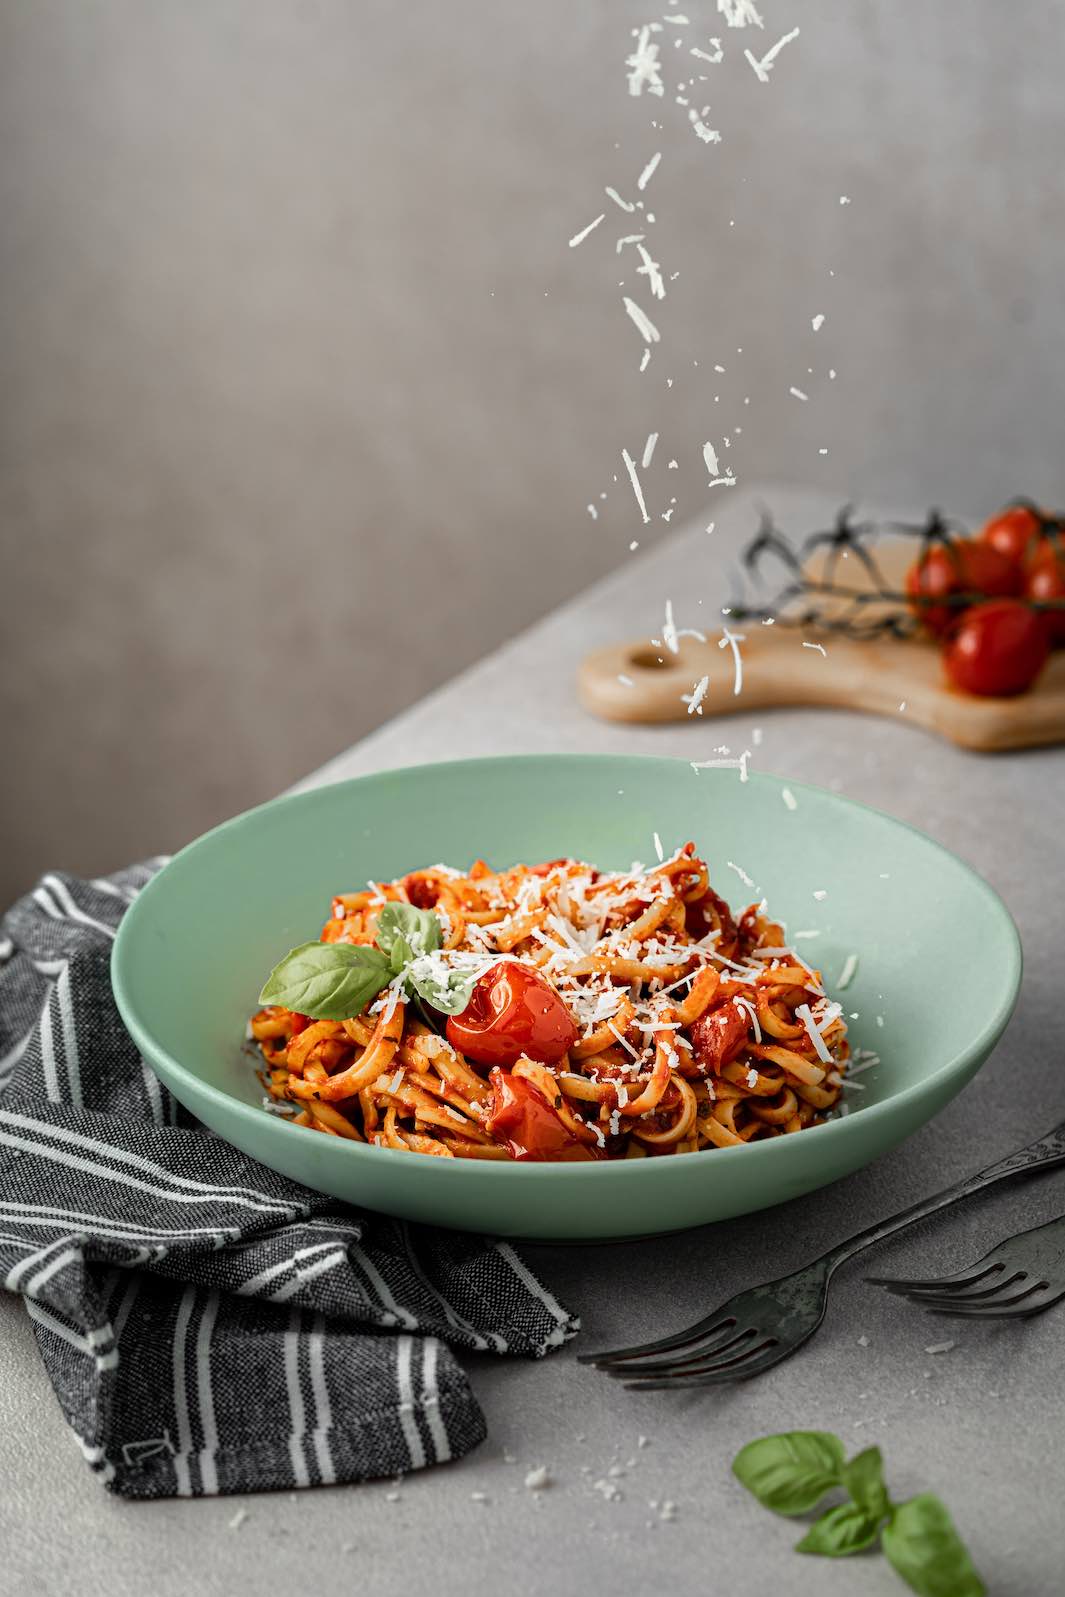 Bolonske špagety sú skvelý obed cez týždeň. Foto - Pexels